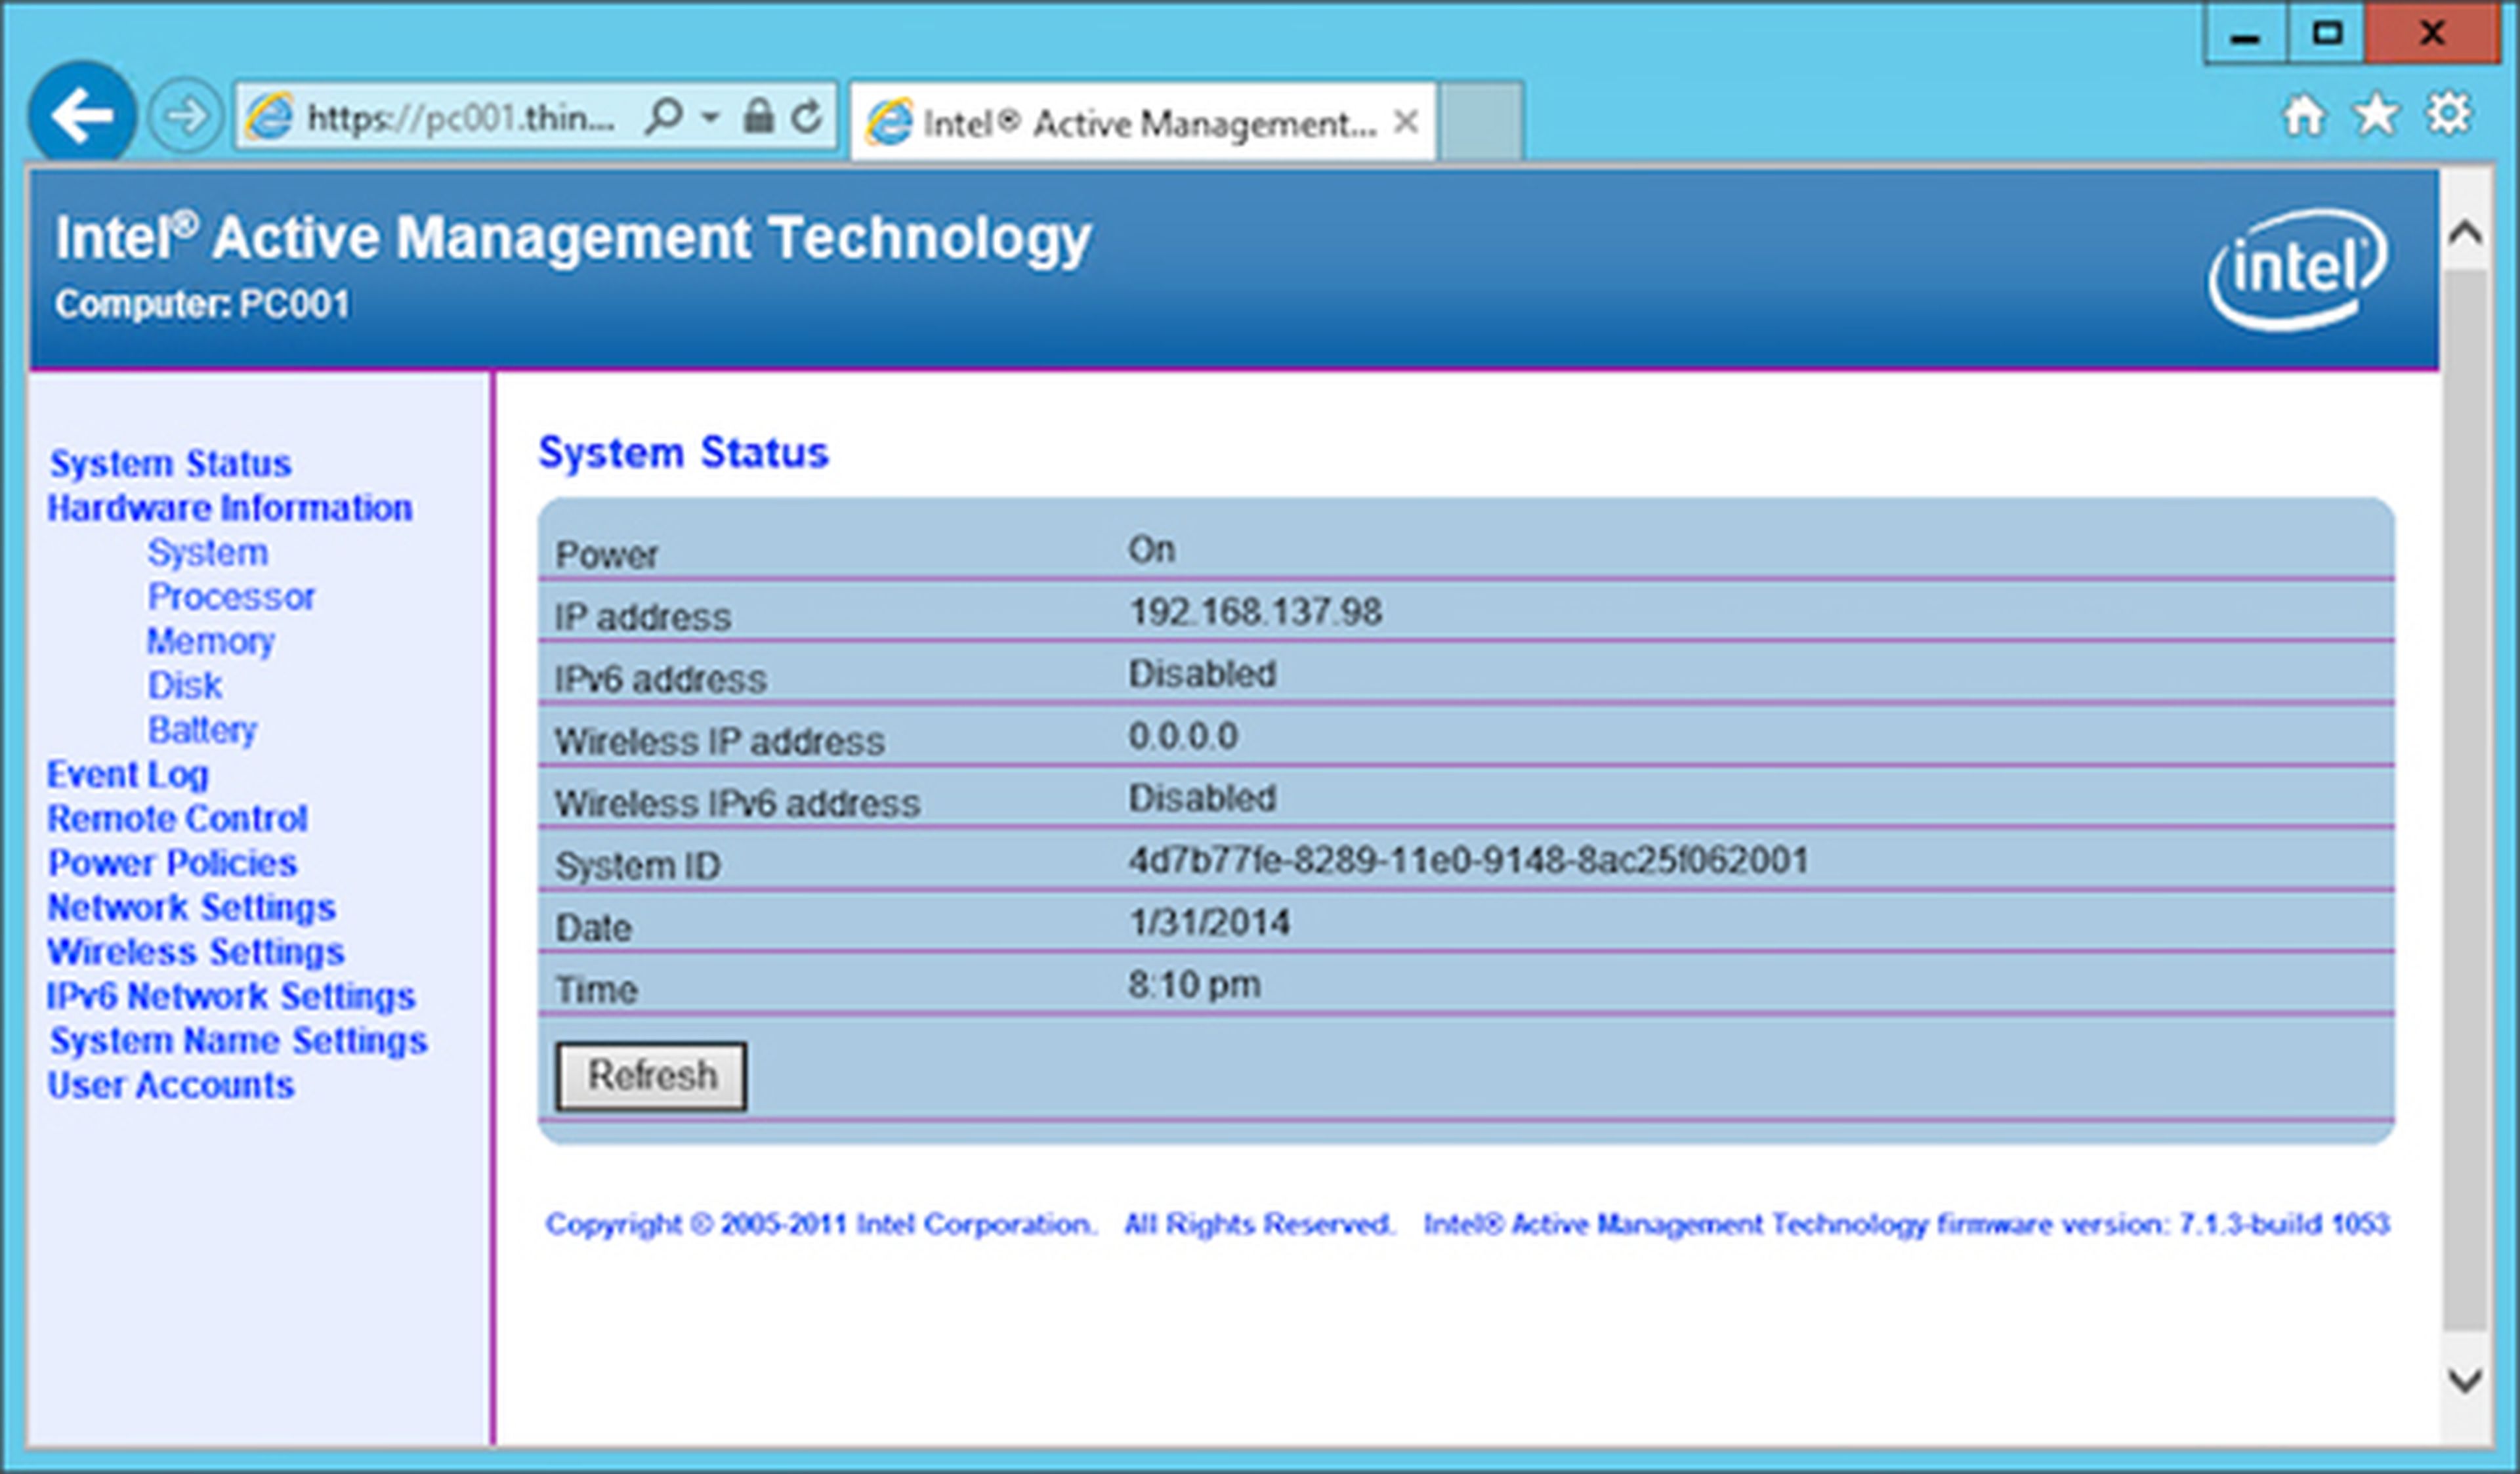 La página de Intel Active Management Technology